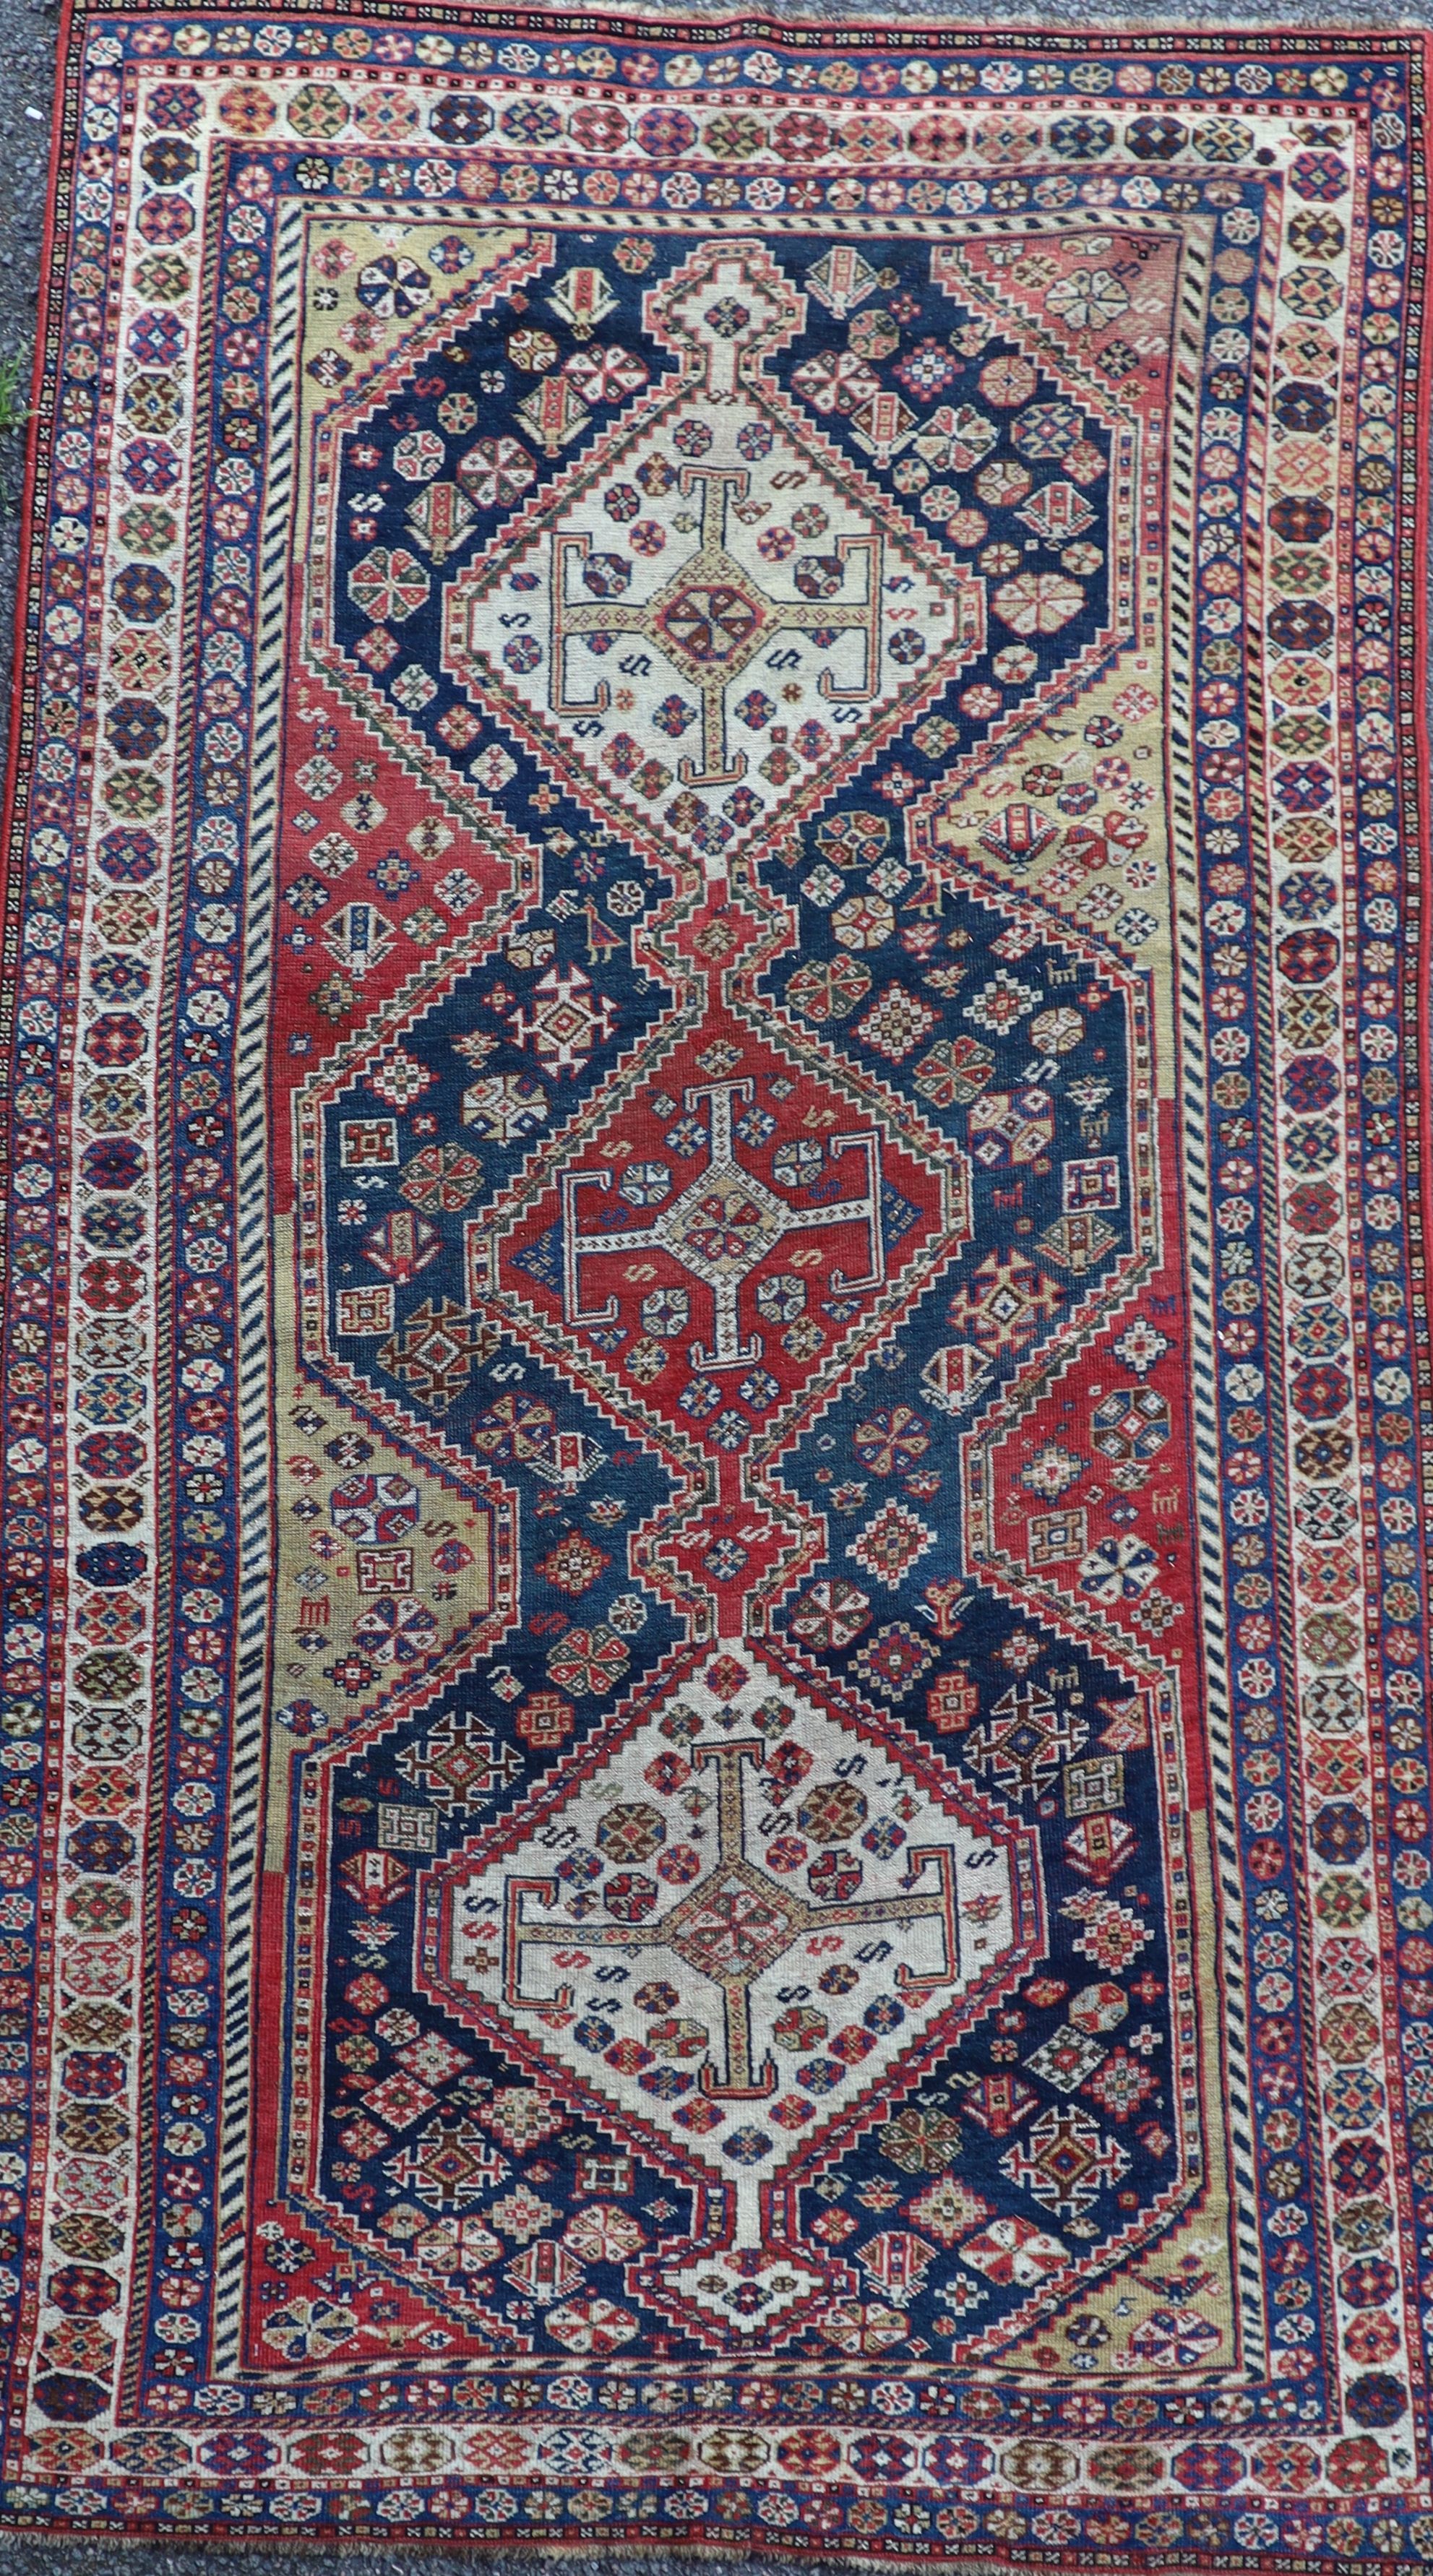 An antique Qashqai blue ground rug 220 x 127cm